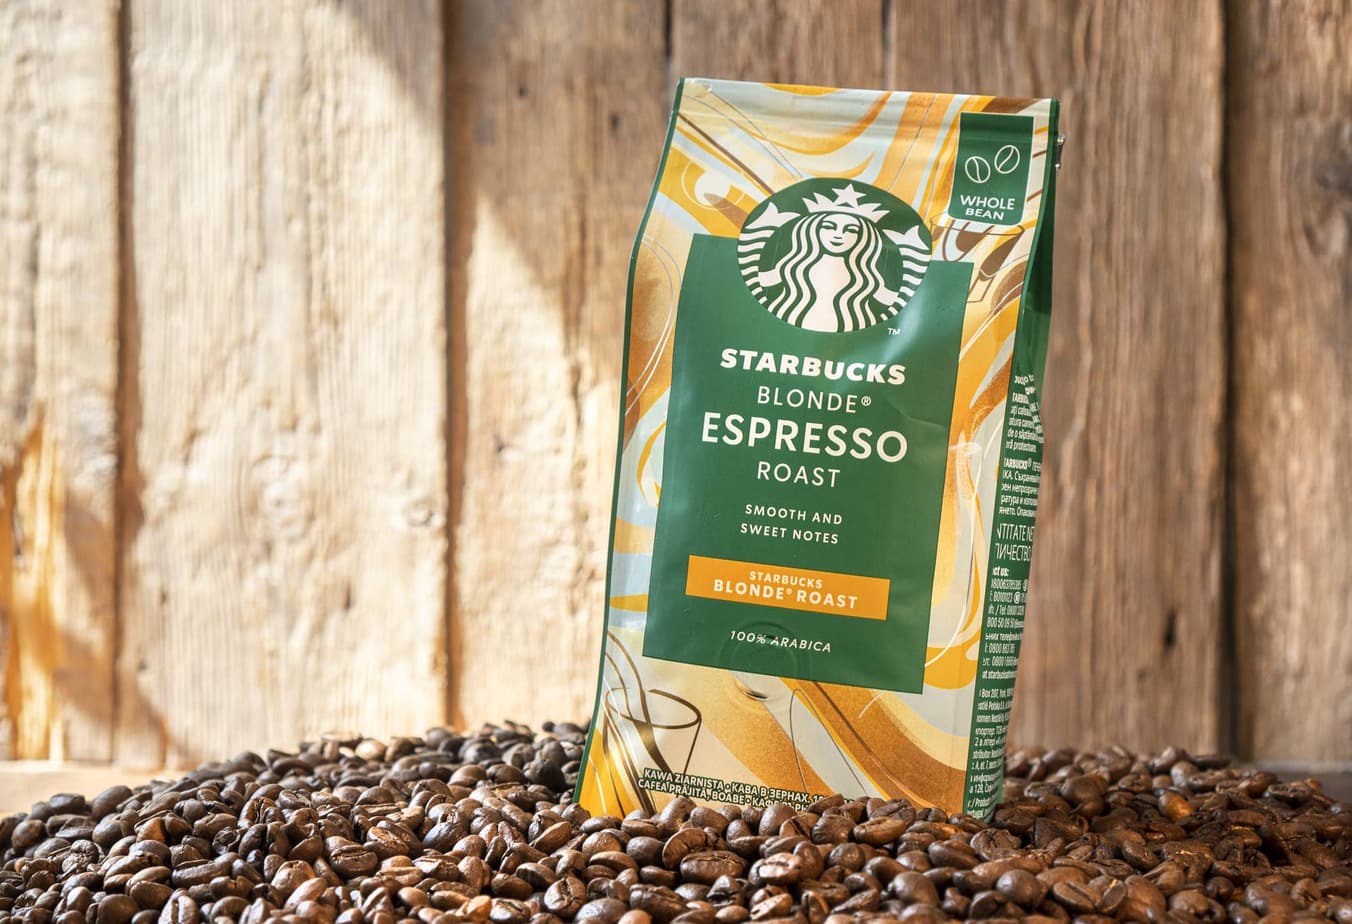 What is Starbucks blonde espresso?